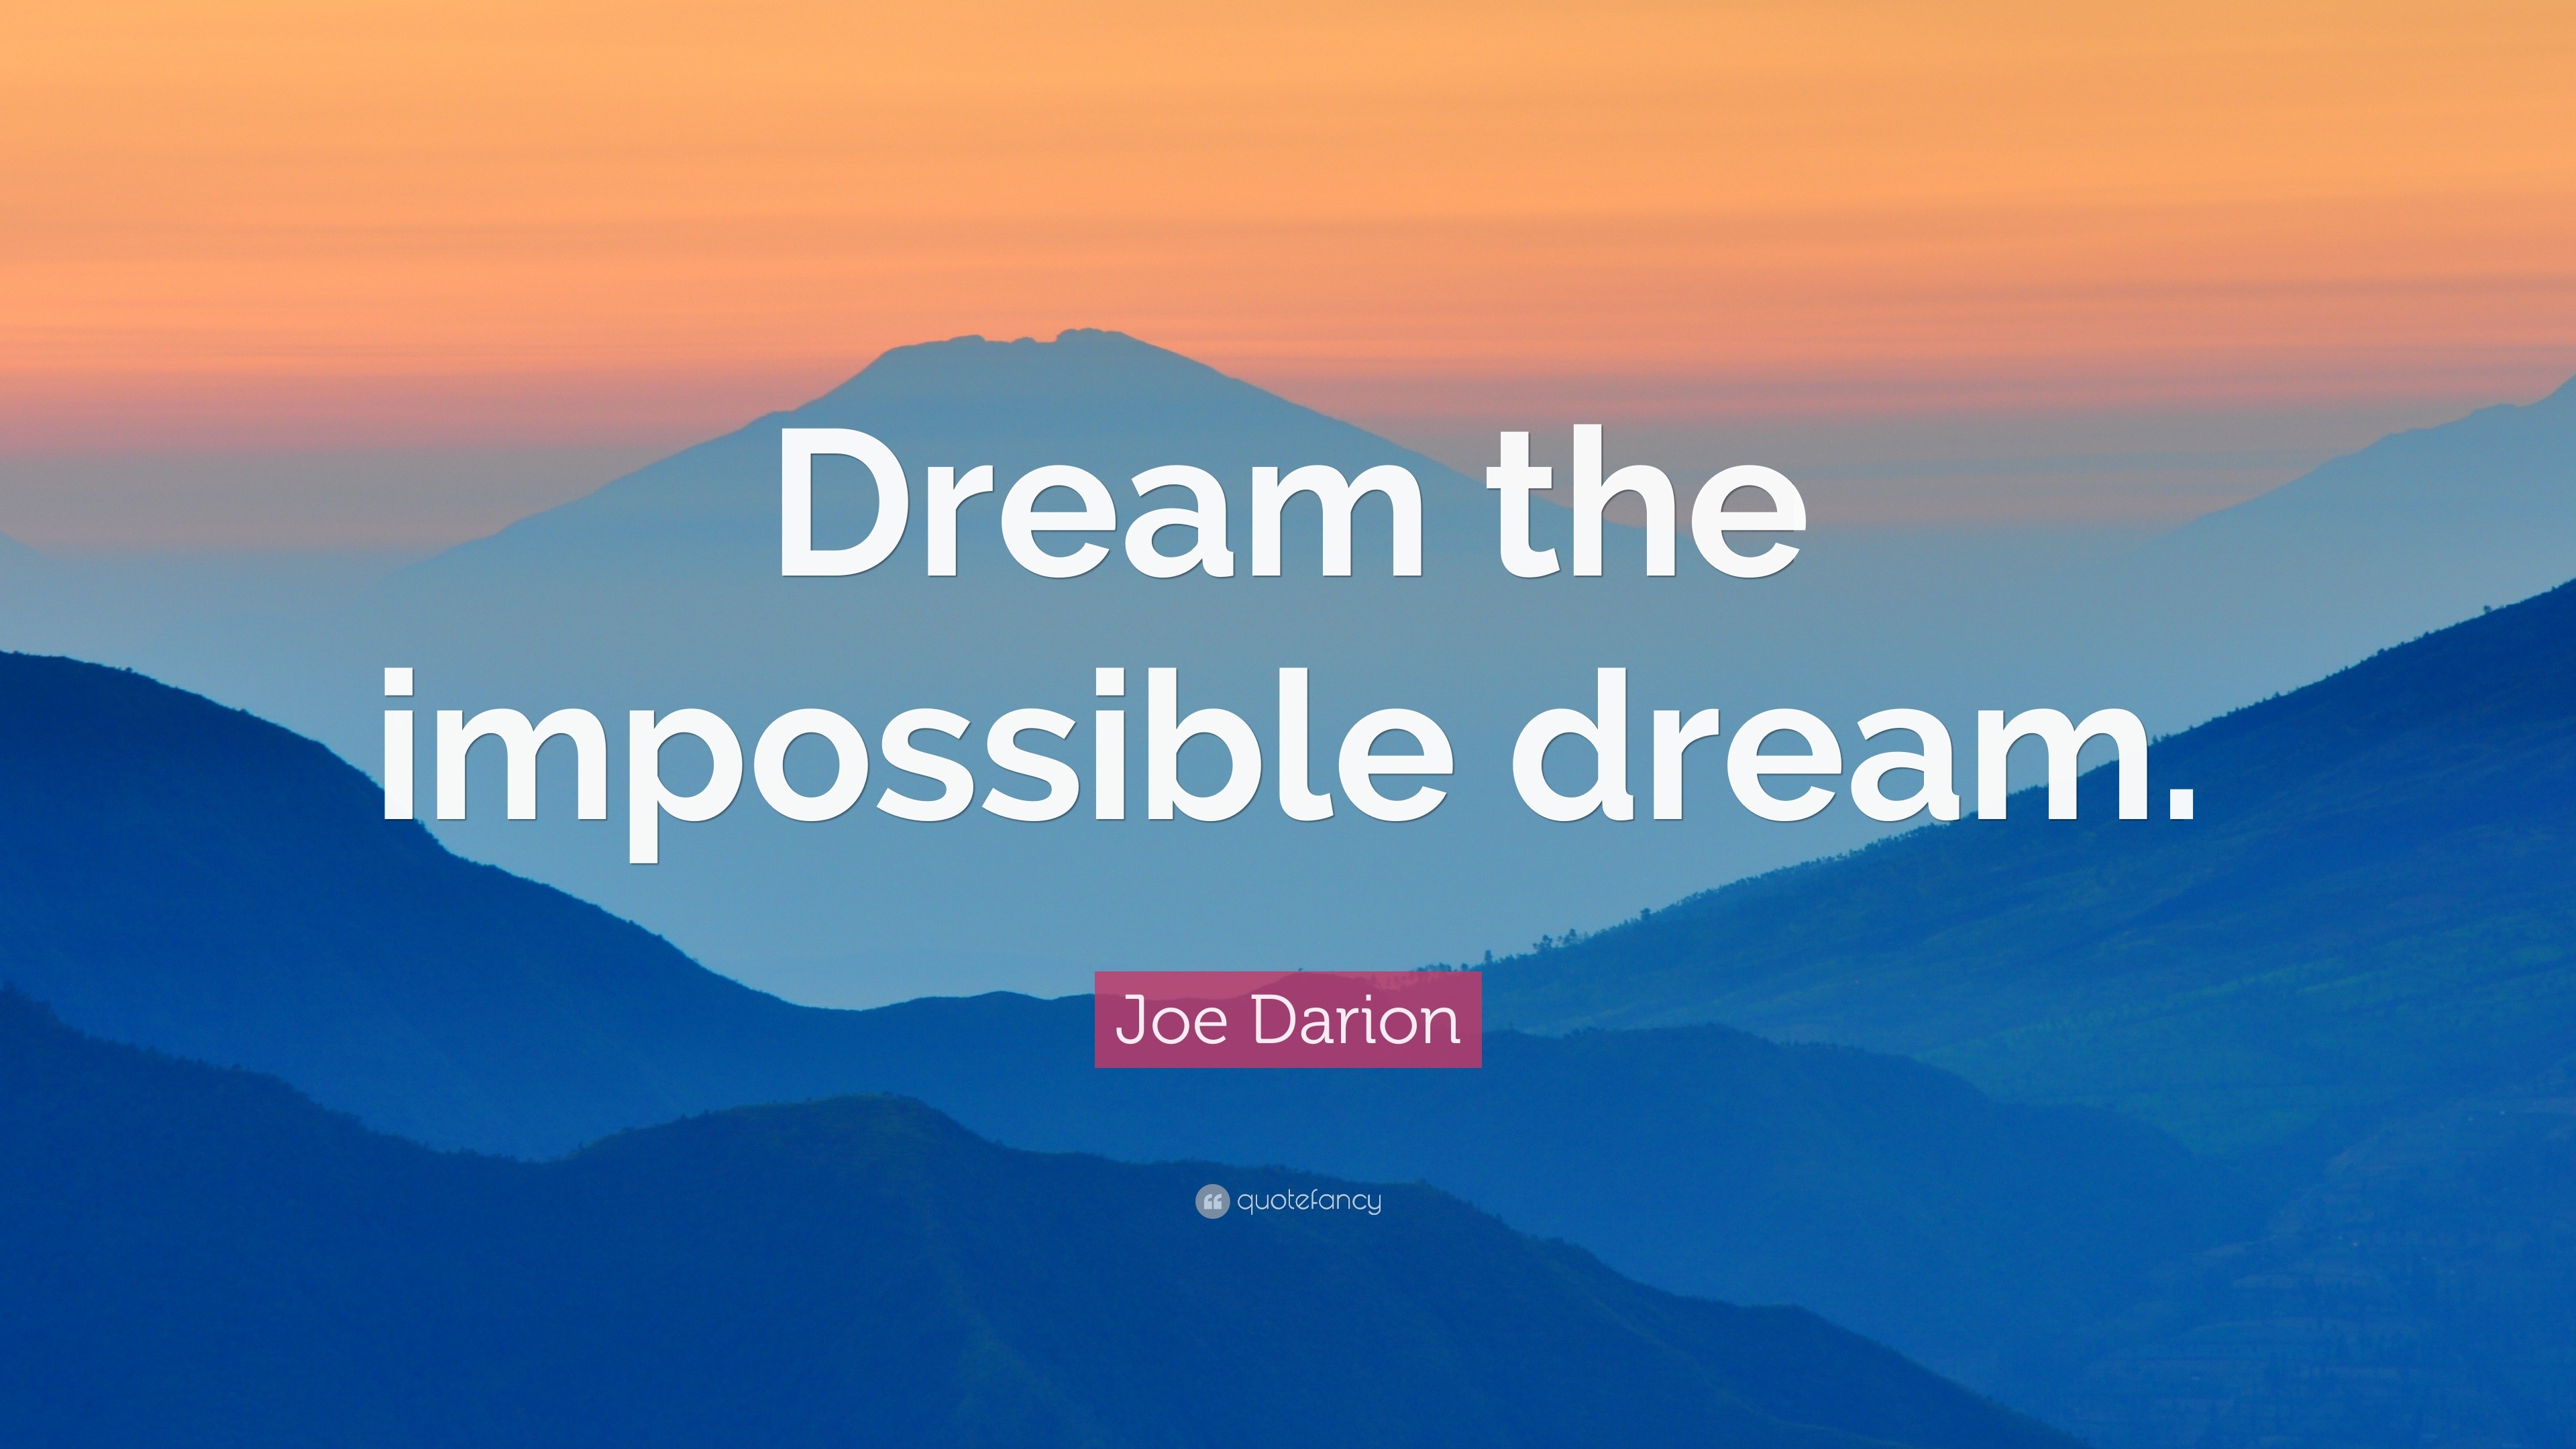 Joe Darion Quote “Dream the impossible dream.”